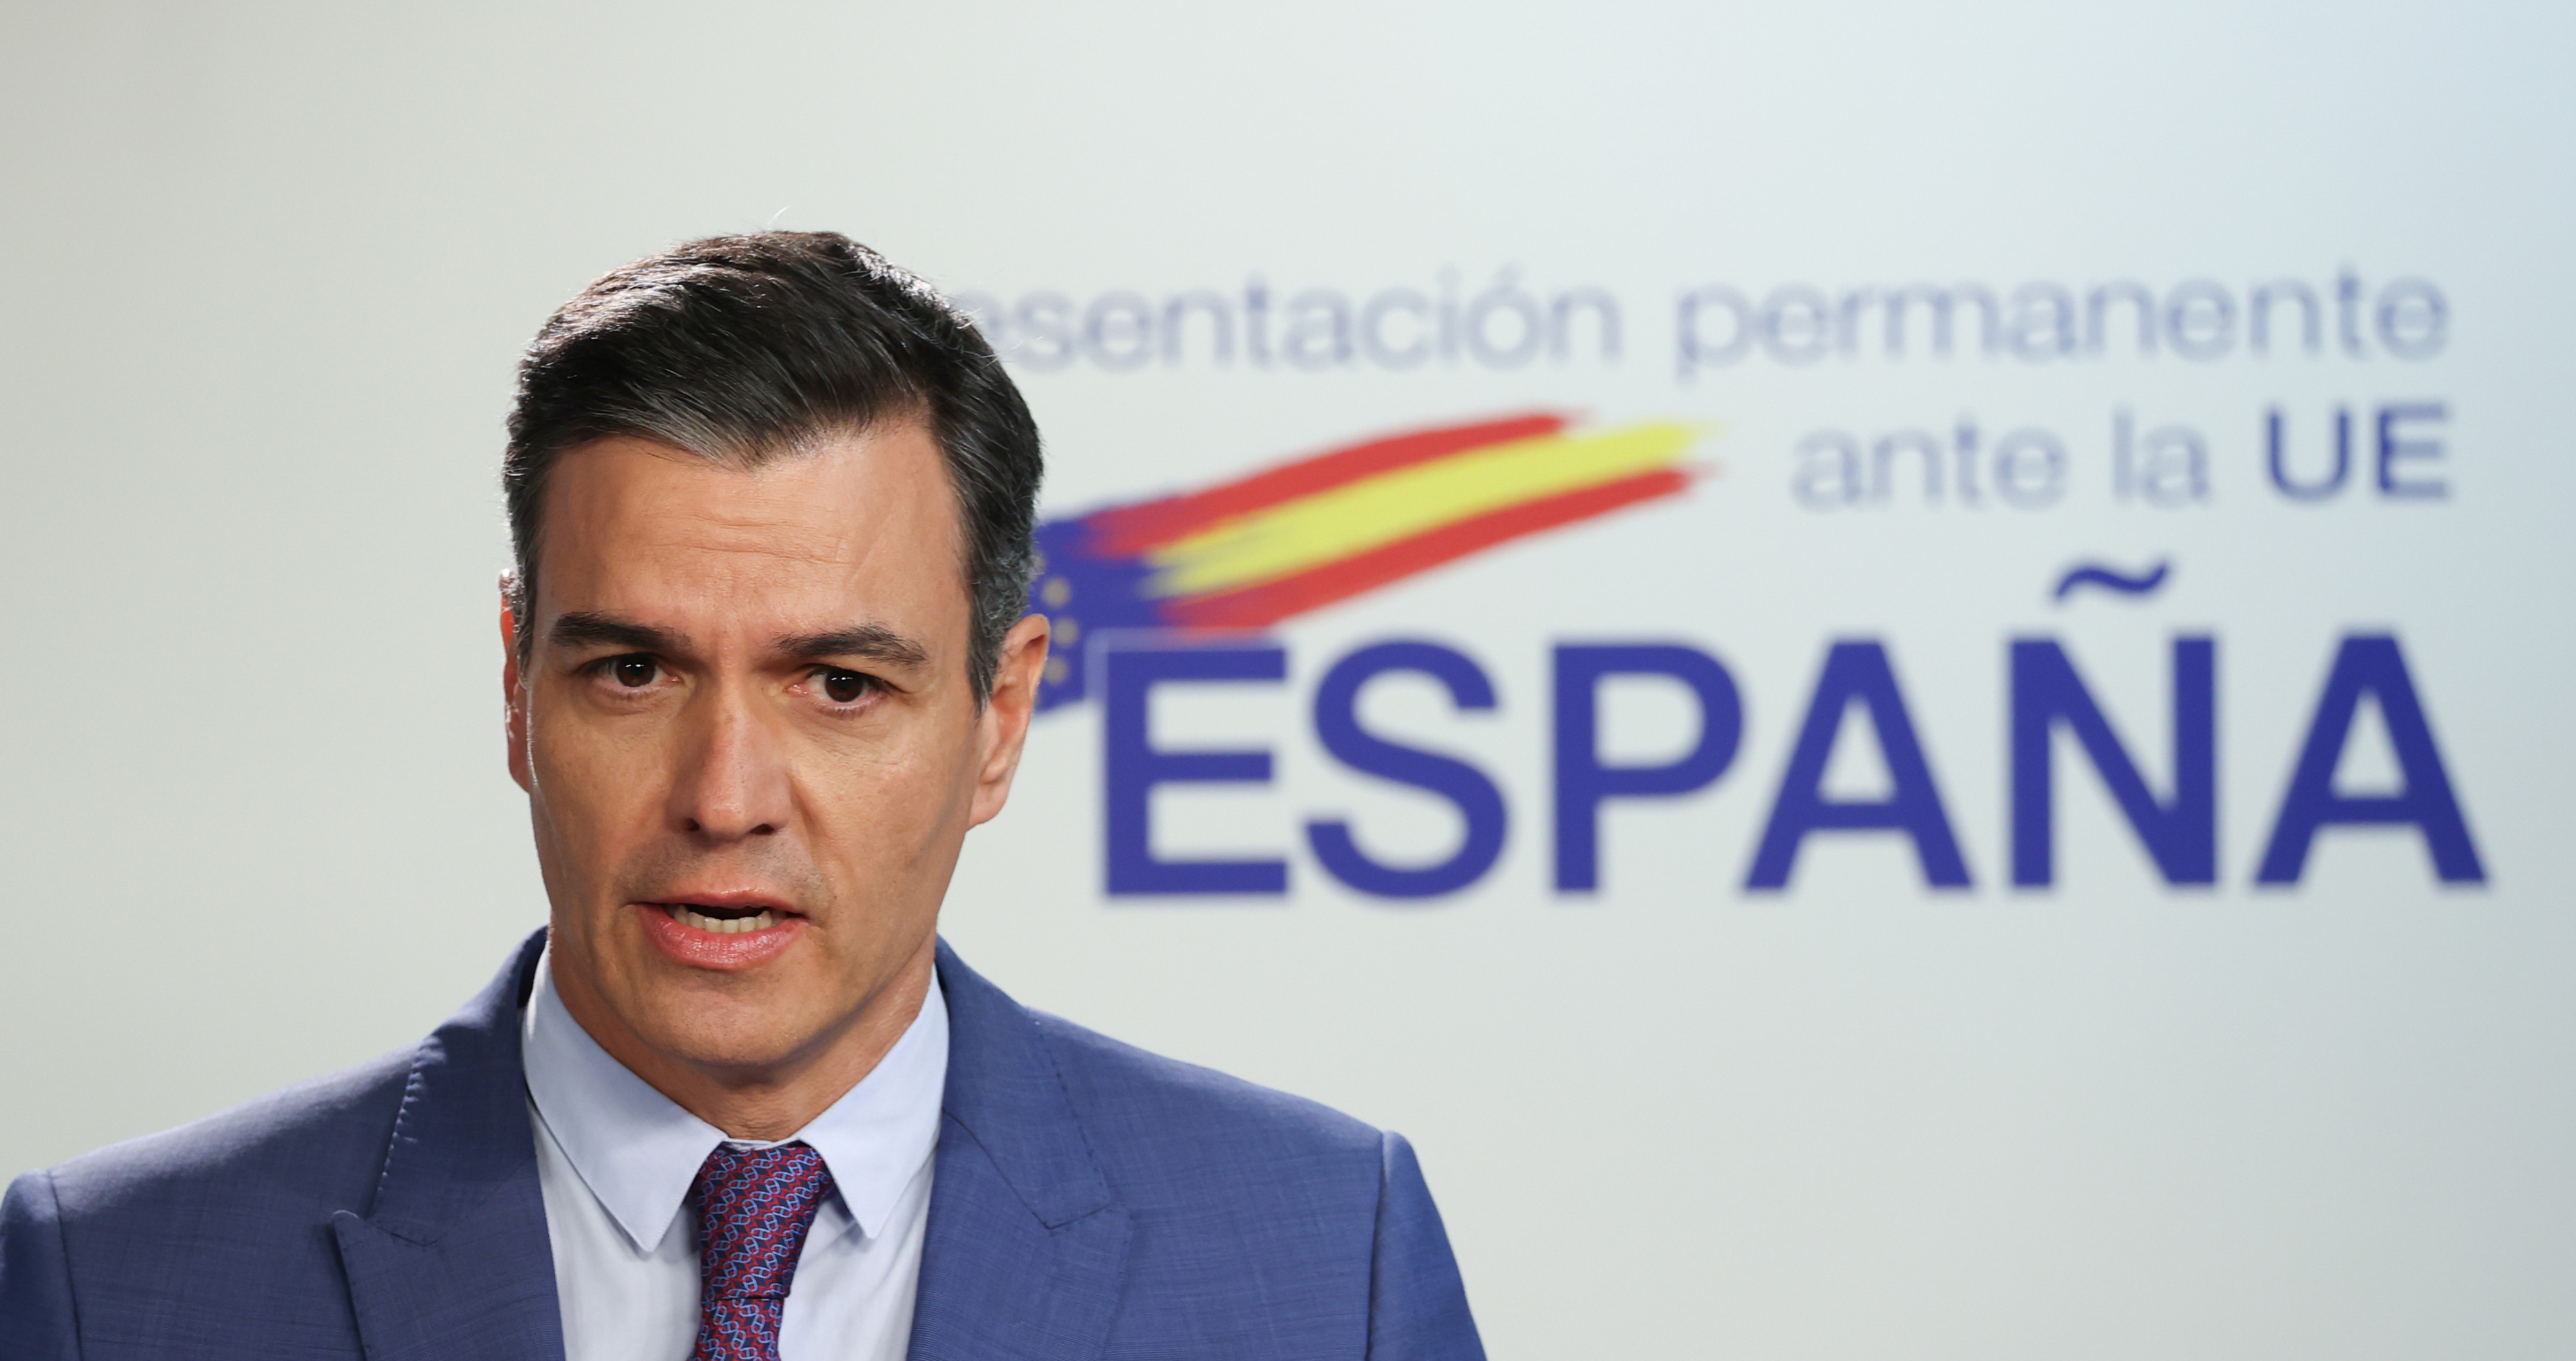 El presidente del Gobierno de España, Pedro Sánchez, comparece durante una rueda de prensa en la segunda jornada de la reunión extraordinaria del Consejo Europeo en Bruselas / EP